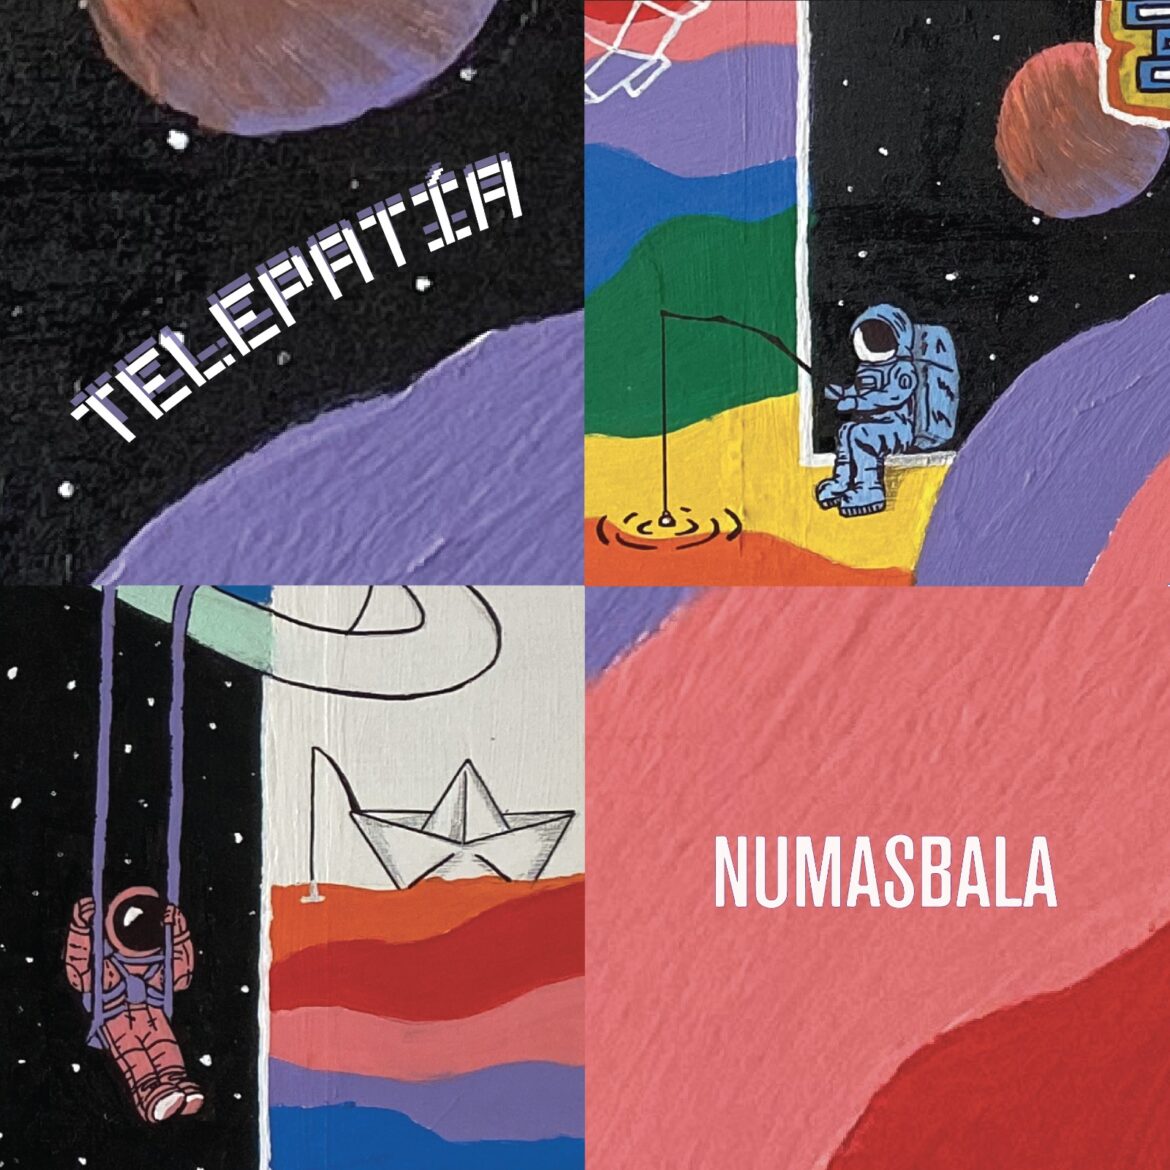 Numasbala le canta a las conexiones invisibles en ‘Telepatía’, una canción de amor, intuición y celebración